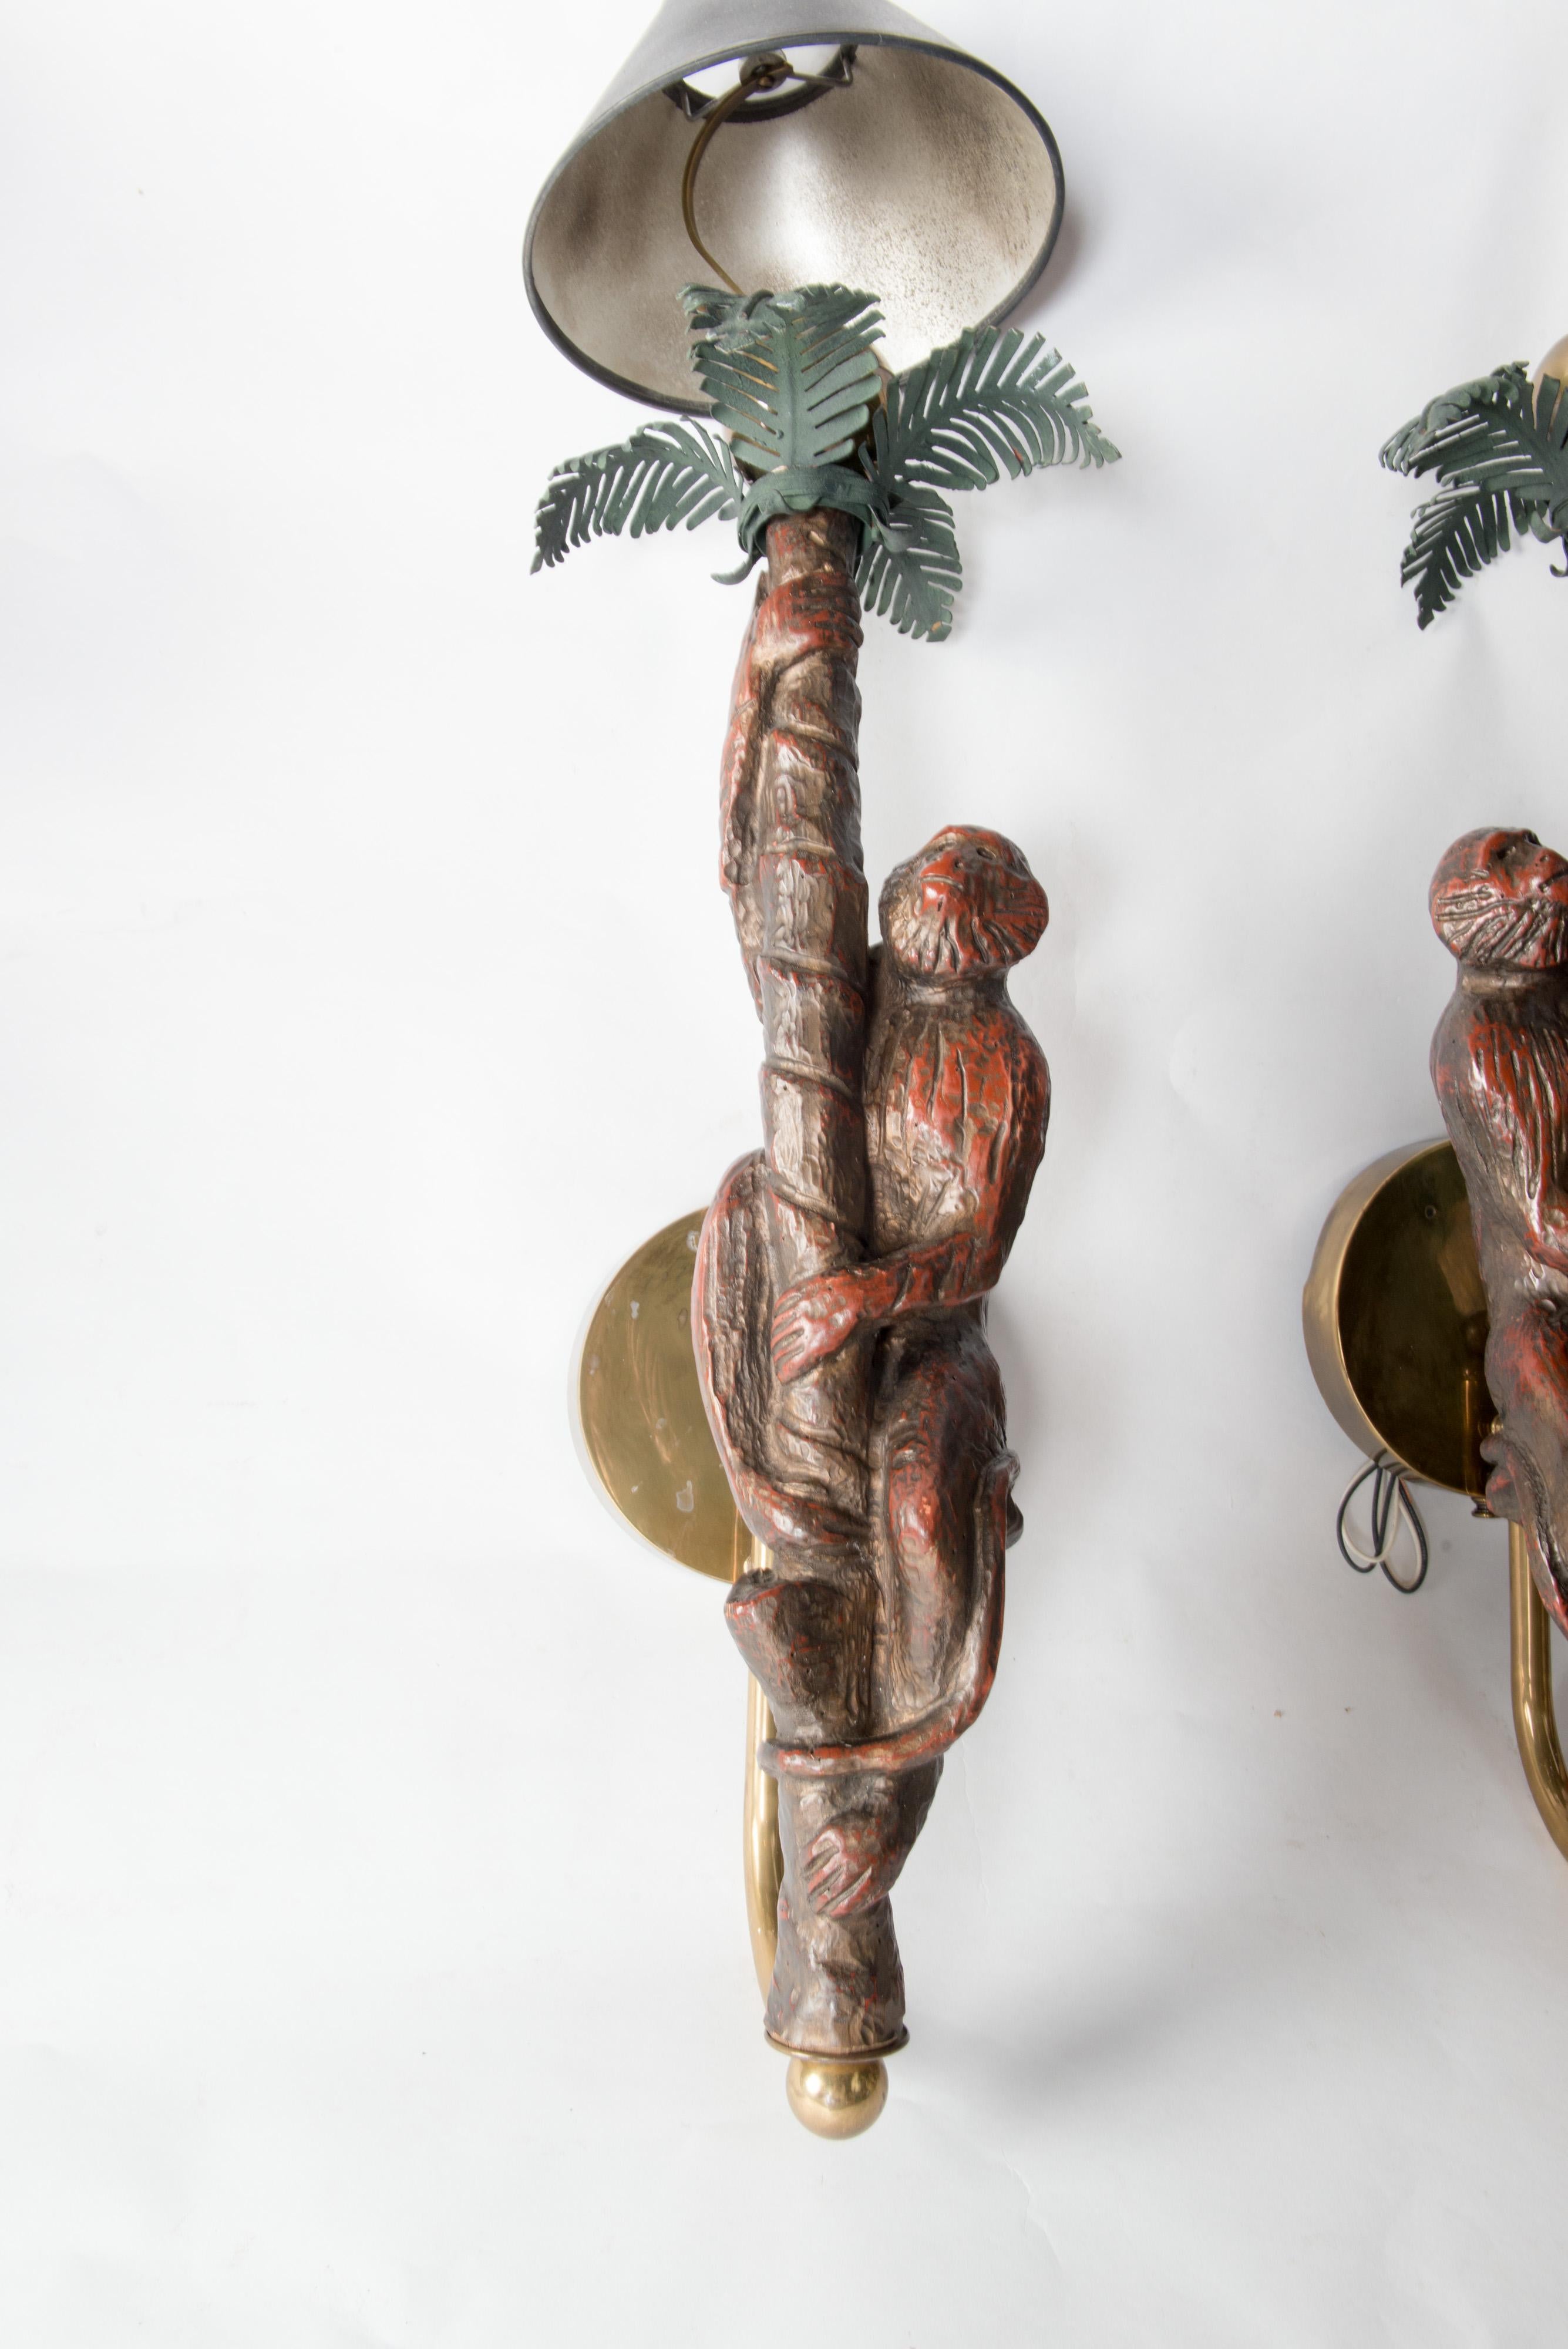 Großes und kräftiges Affenpaar, das auf eine Palme klettert. Geschnitztes Holz mit Palmwedeln aus Metall. 28